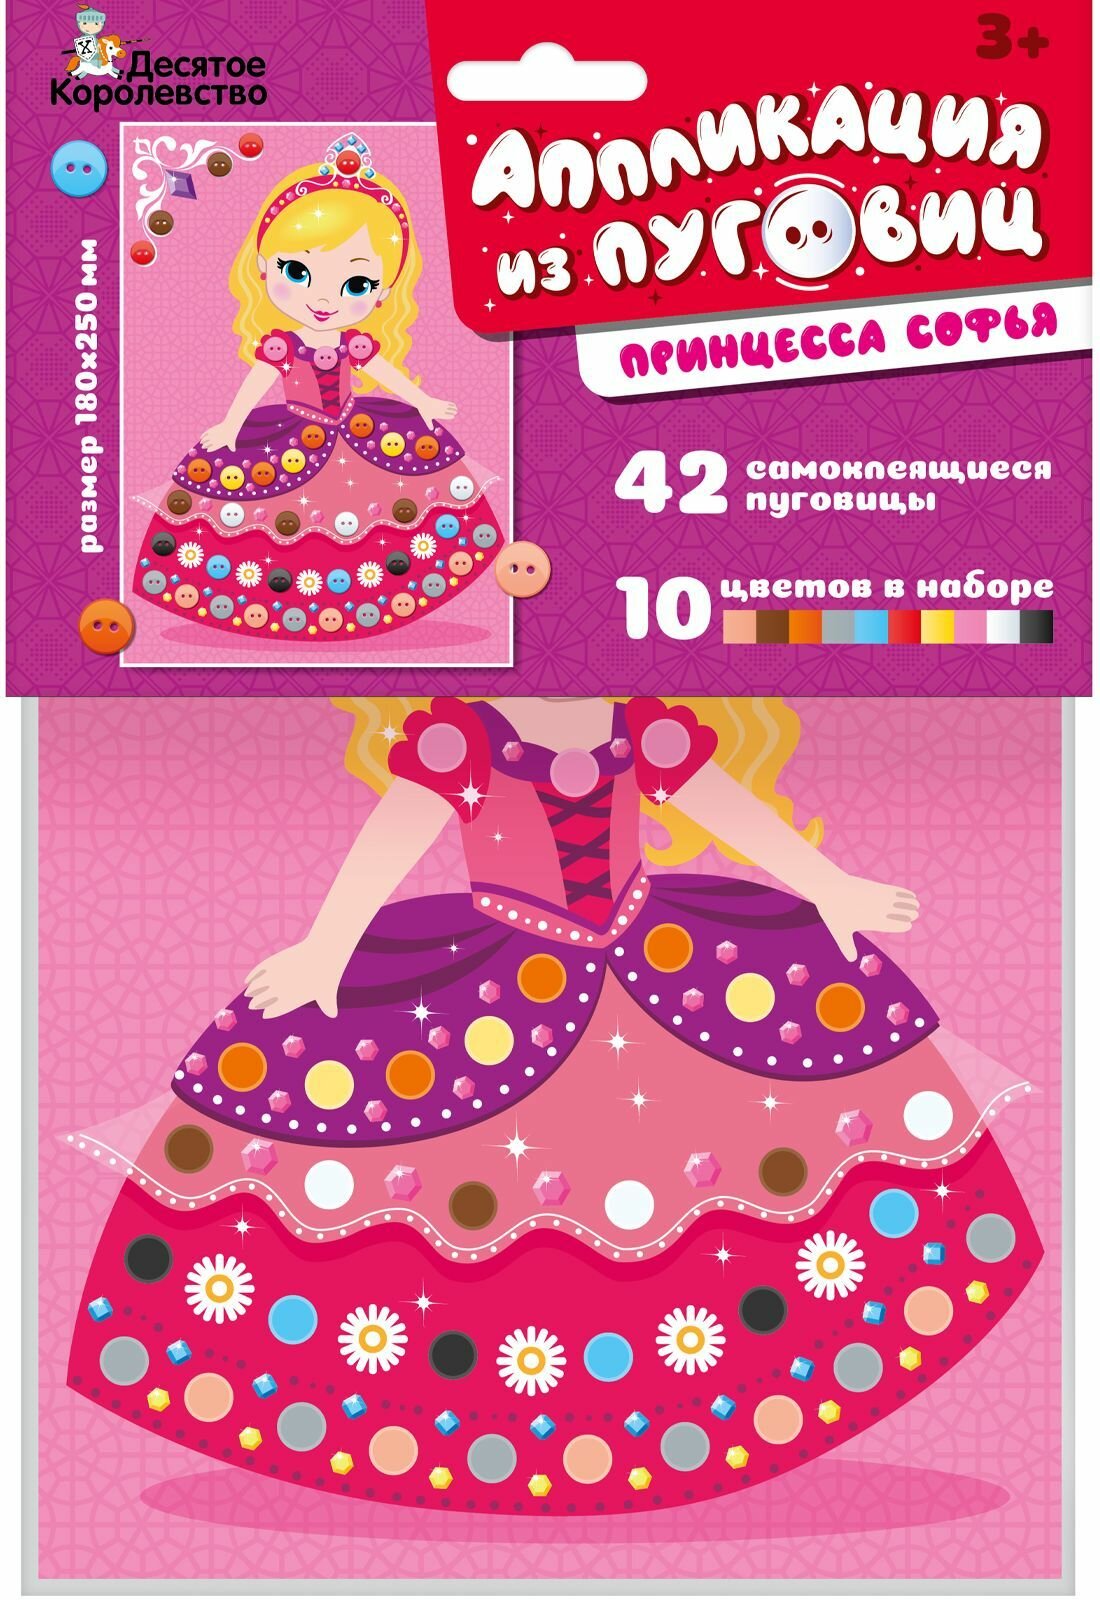 Аппликация из Пуговиц "Принцесса Софья" для детей, набор для детского творчества с самоклеющимися деталями, подарок для мальчика и девочки, 10 цветов, 42 пуговицы